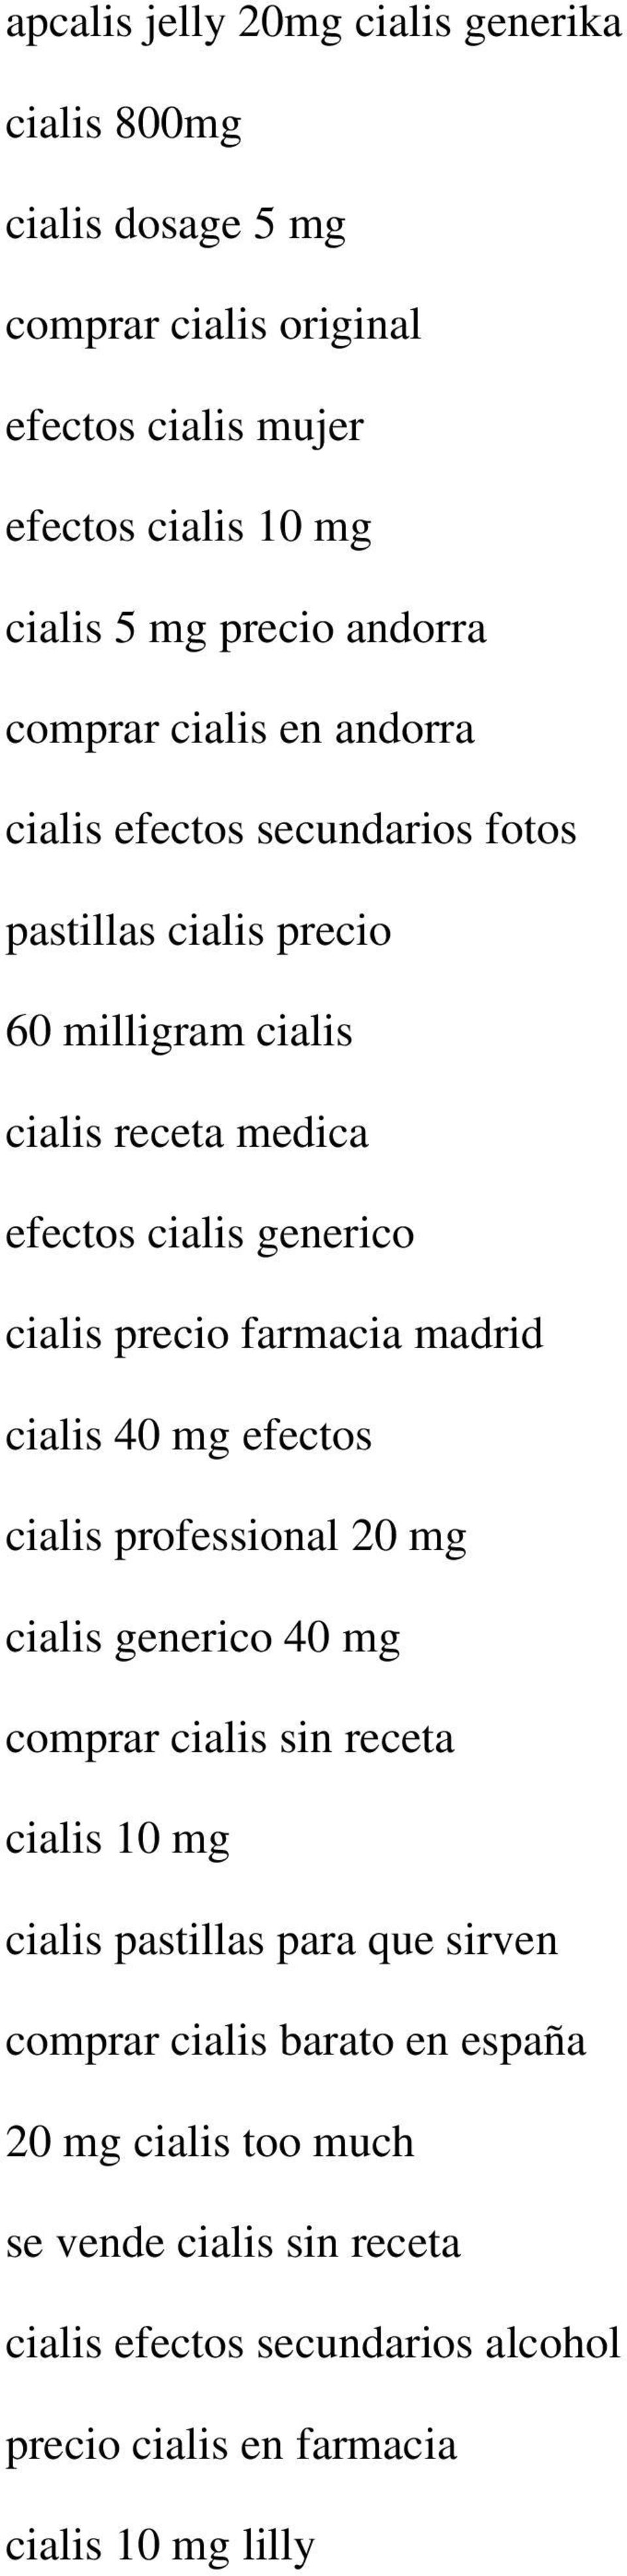 precio farmacia madrid cialis 40 mg efectos cialis professional 20 mg cialis generico 40 mg comprar cialis sin receta cialis 10 mg cialis pastillas para que